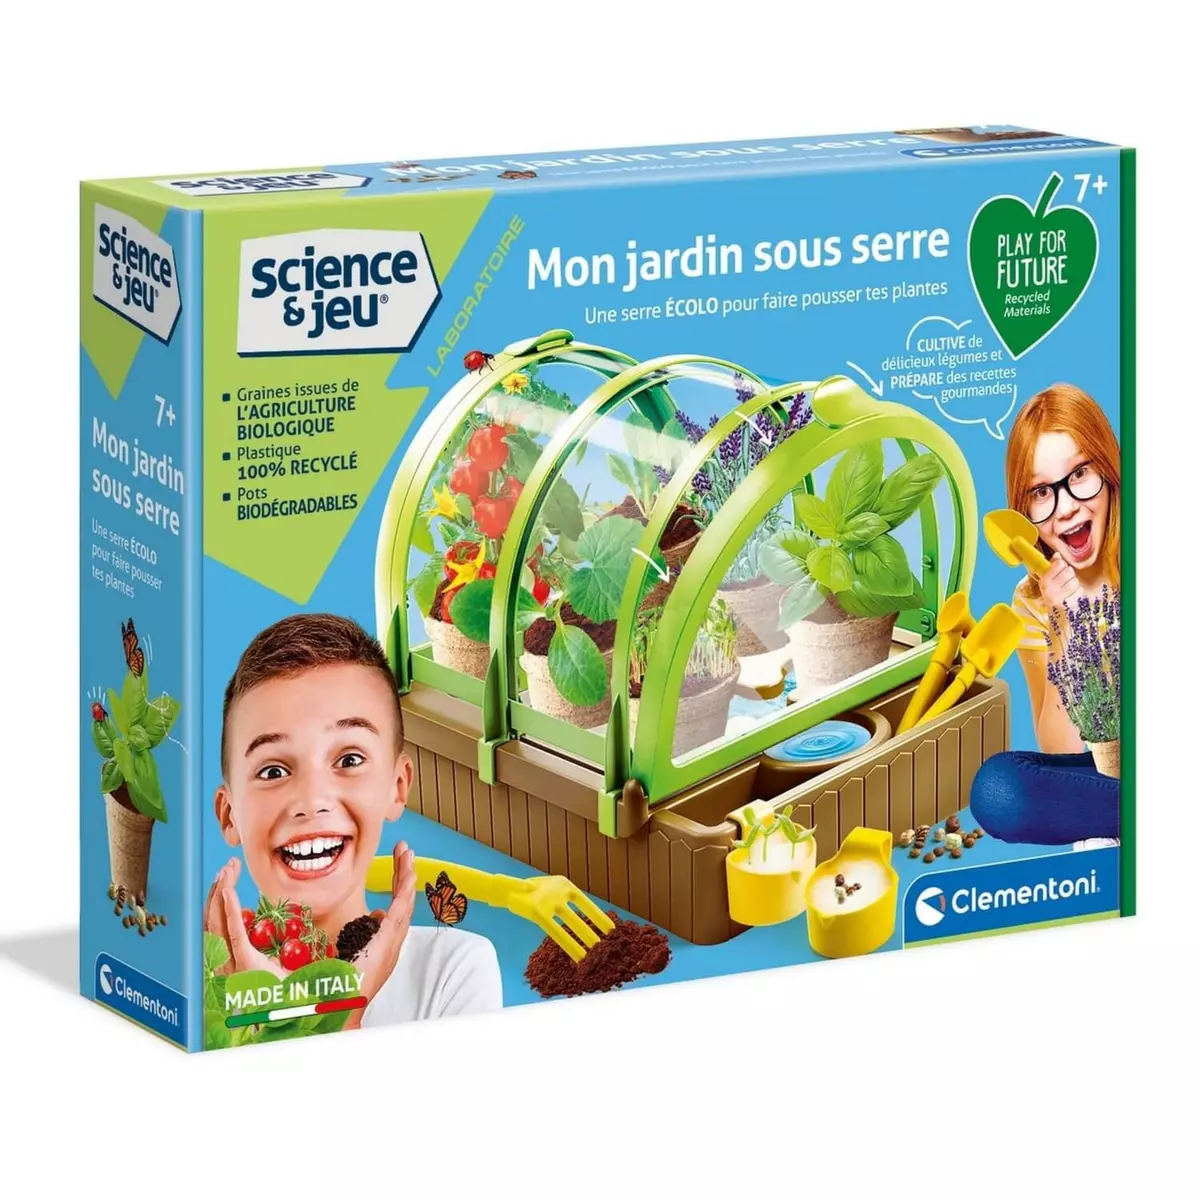 CLEMENTONI Science et jeu : Play for Future : Mon jardin sous serre